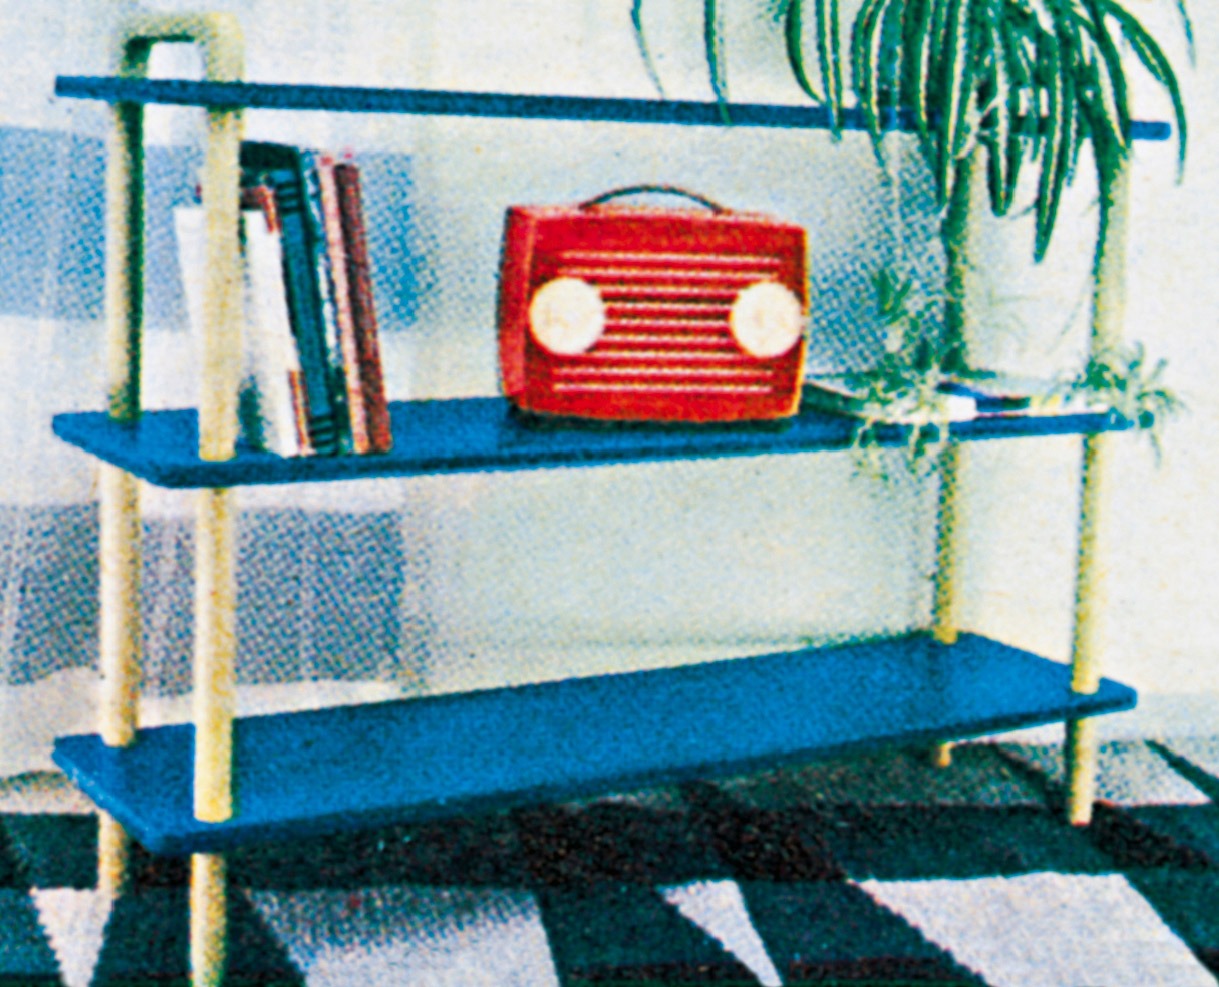 En röd radio står på en hylla i blålackerad bokhylla.